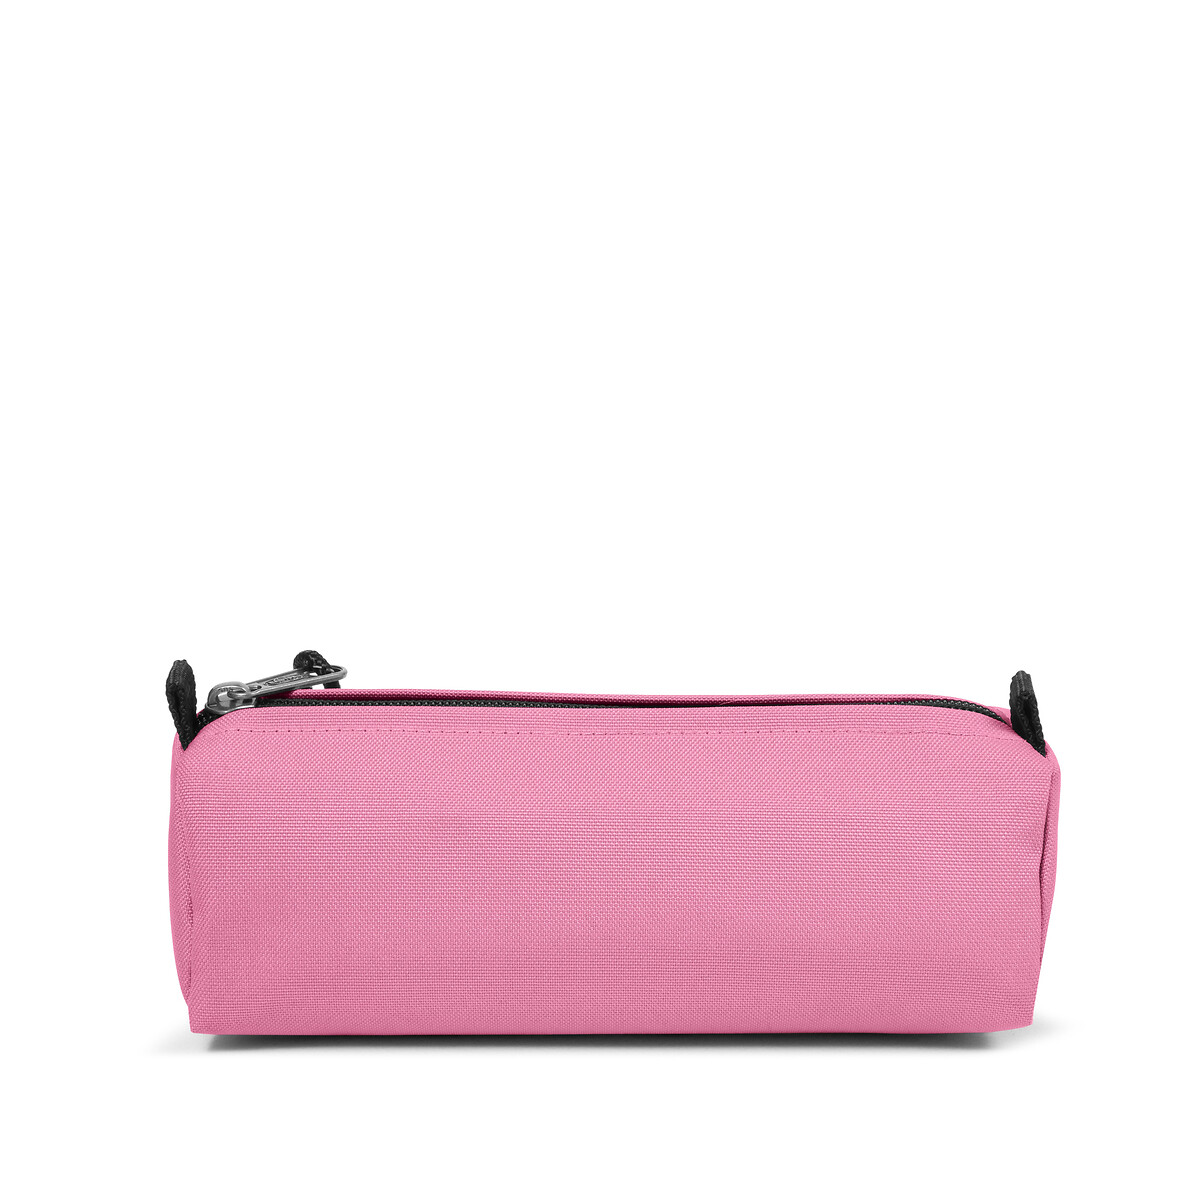 Benchmark pencil case, pink, Eastpak